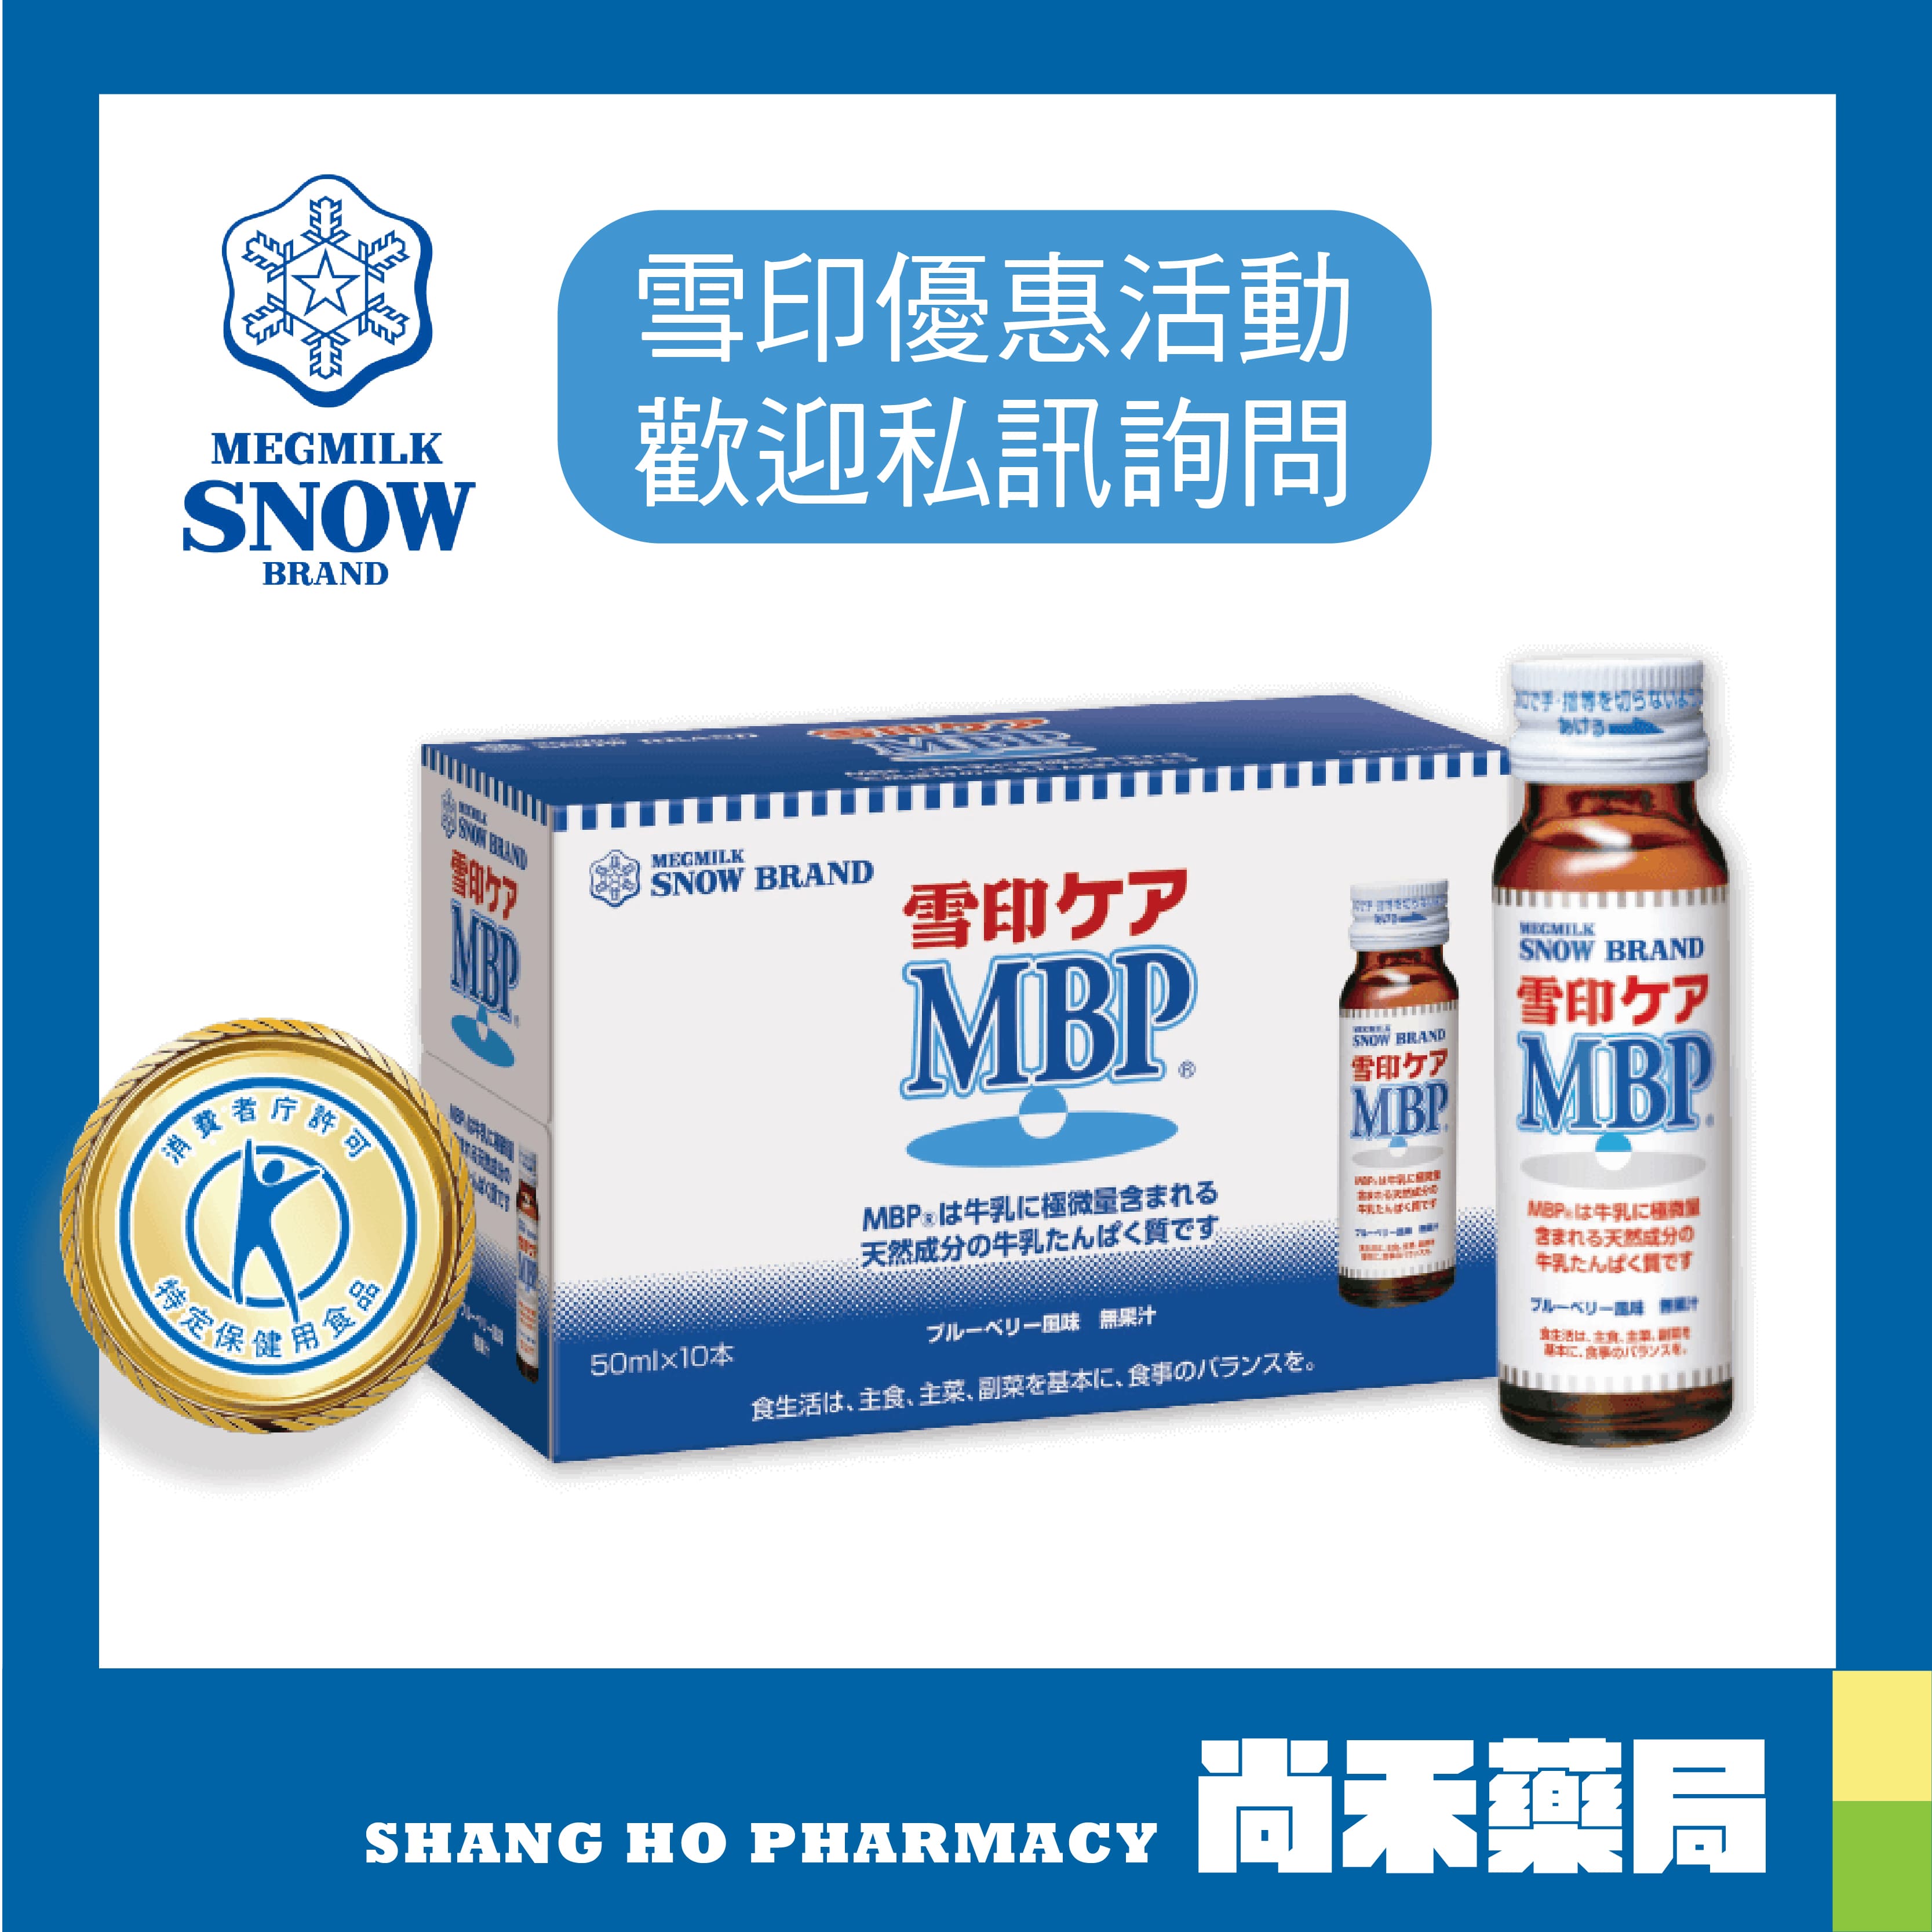 ❄【雪印】MBP飲品50ml (10瓶/盒)❄ 機能性蛋白質 維持骨骼健康 幫助骨骼正常發育